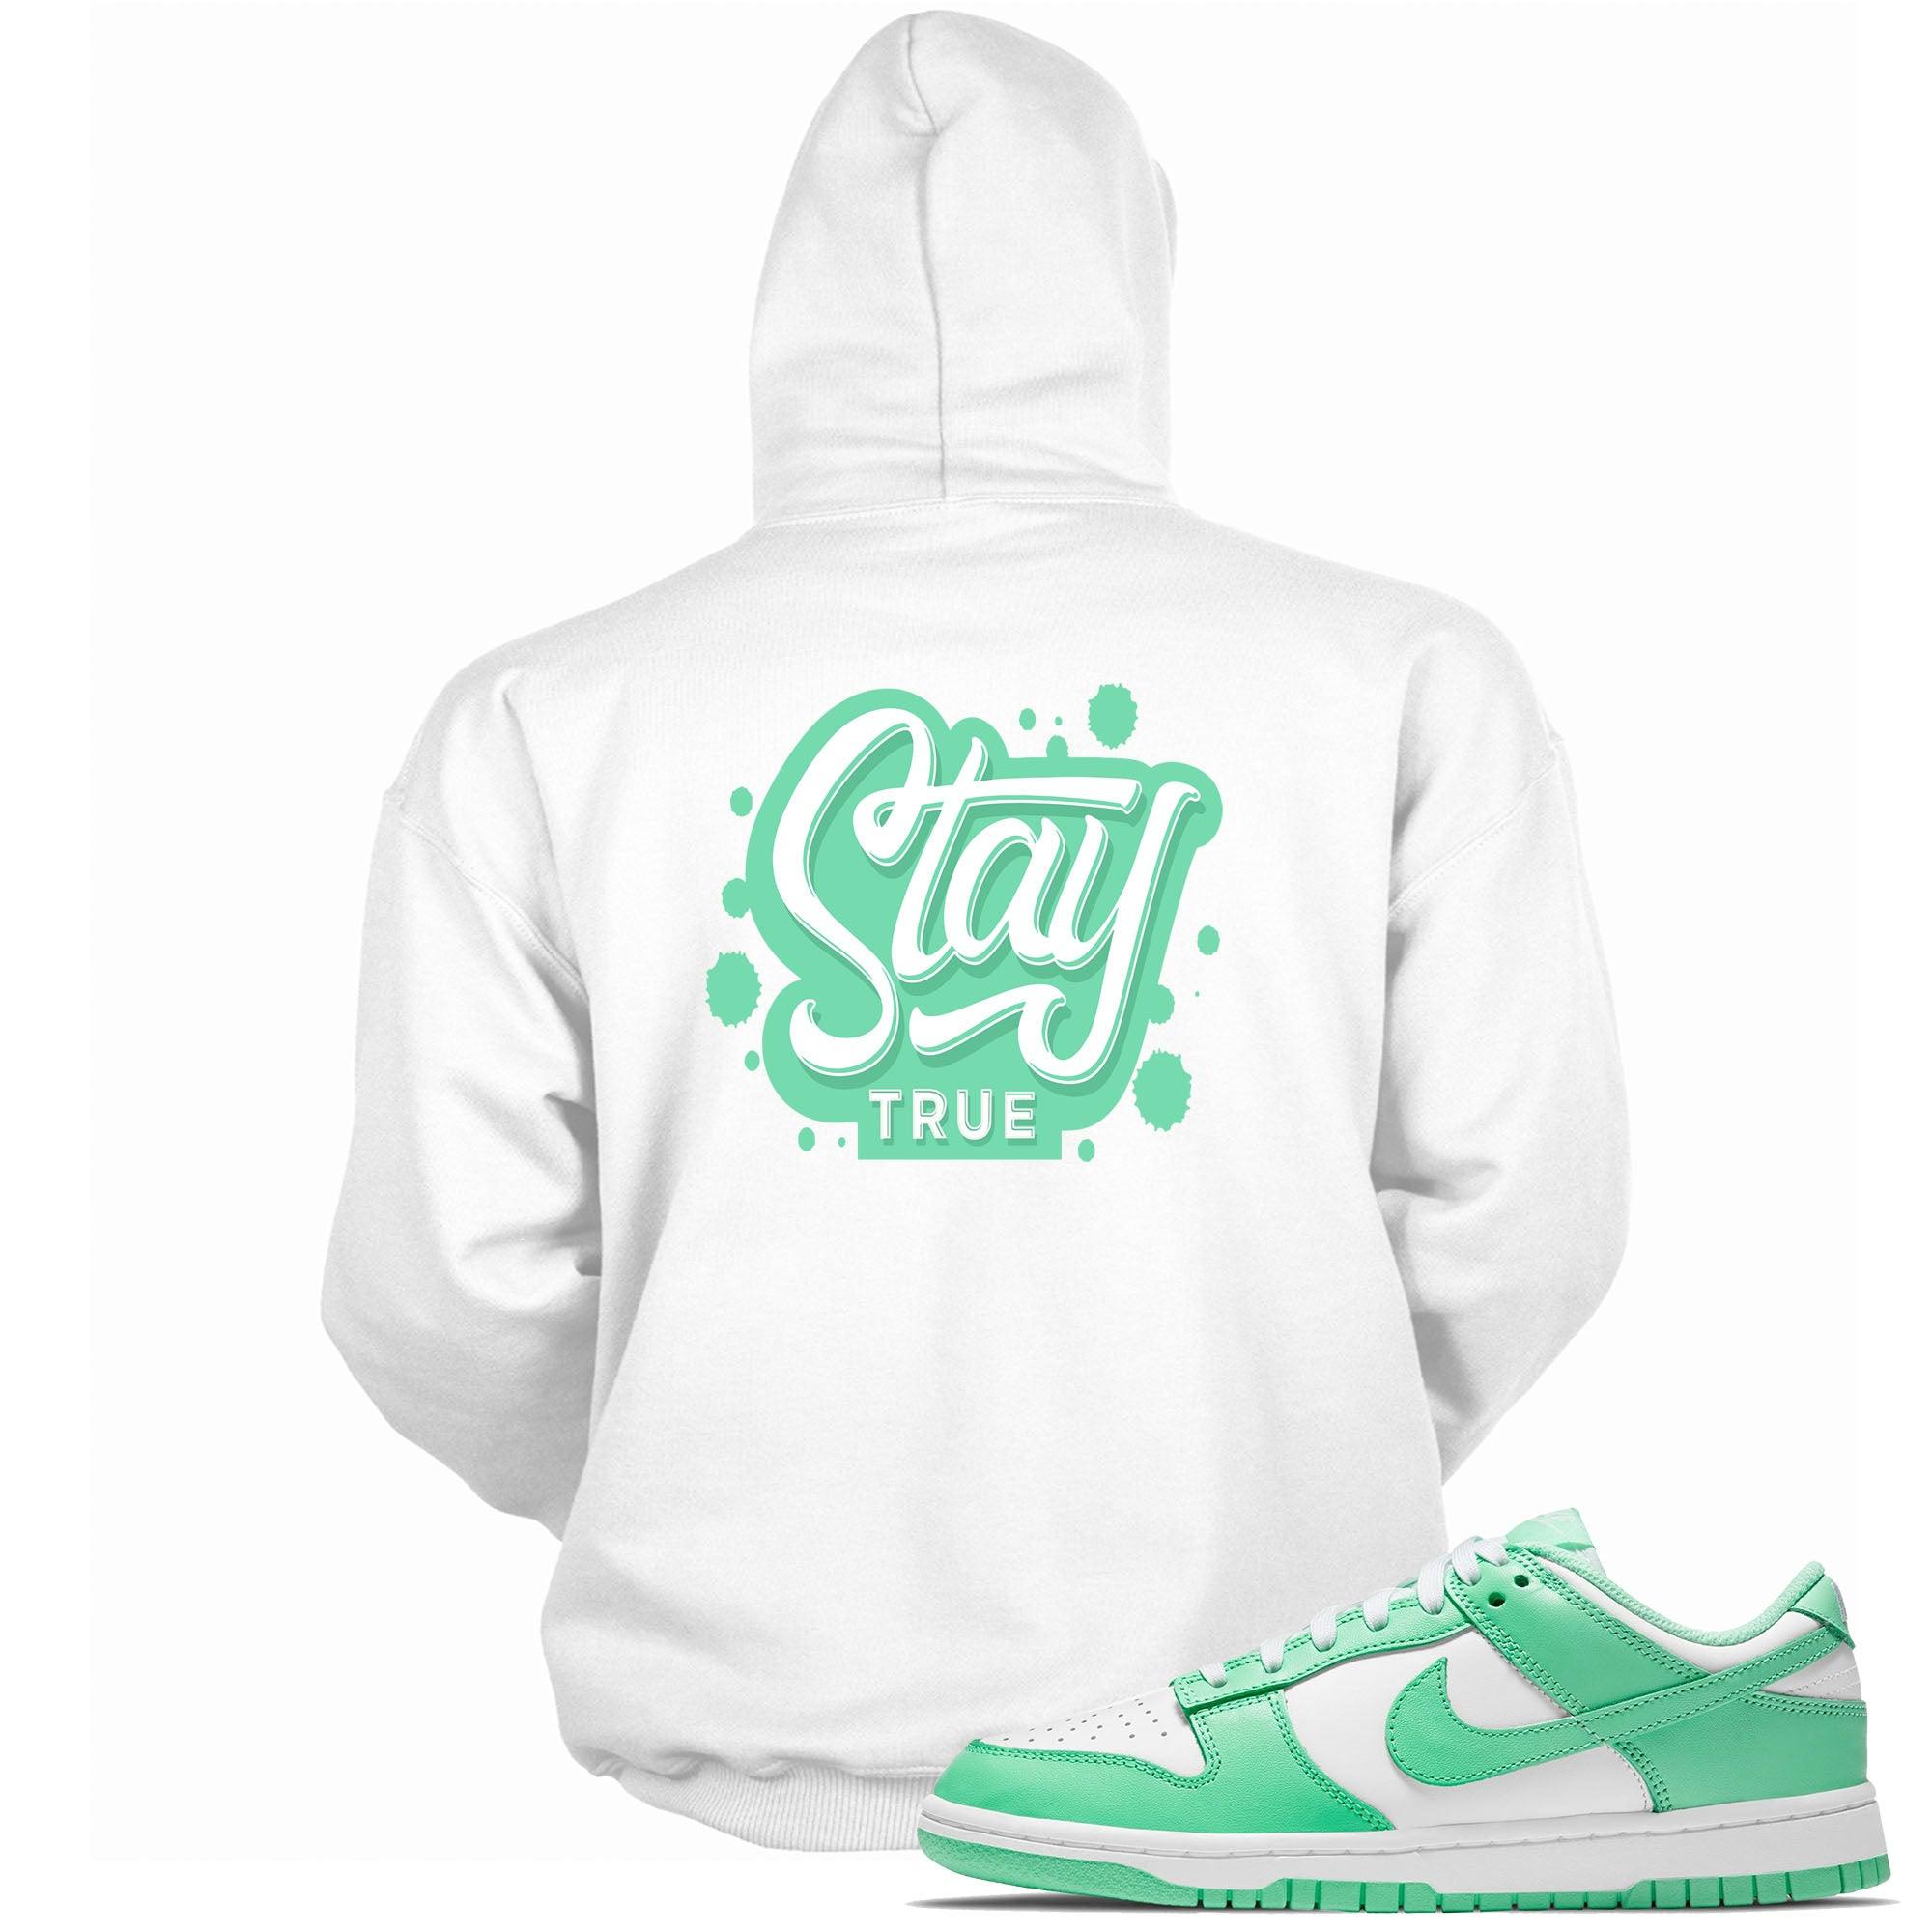 Stay True Hooded Sneaker Sweatshirt Nike Dunk Low Green Glow photo